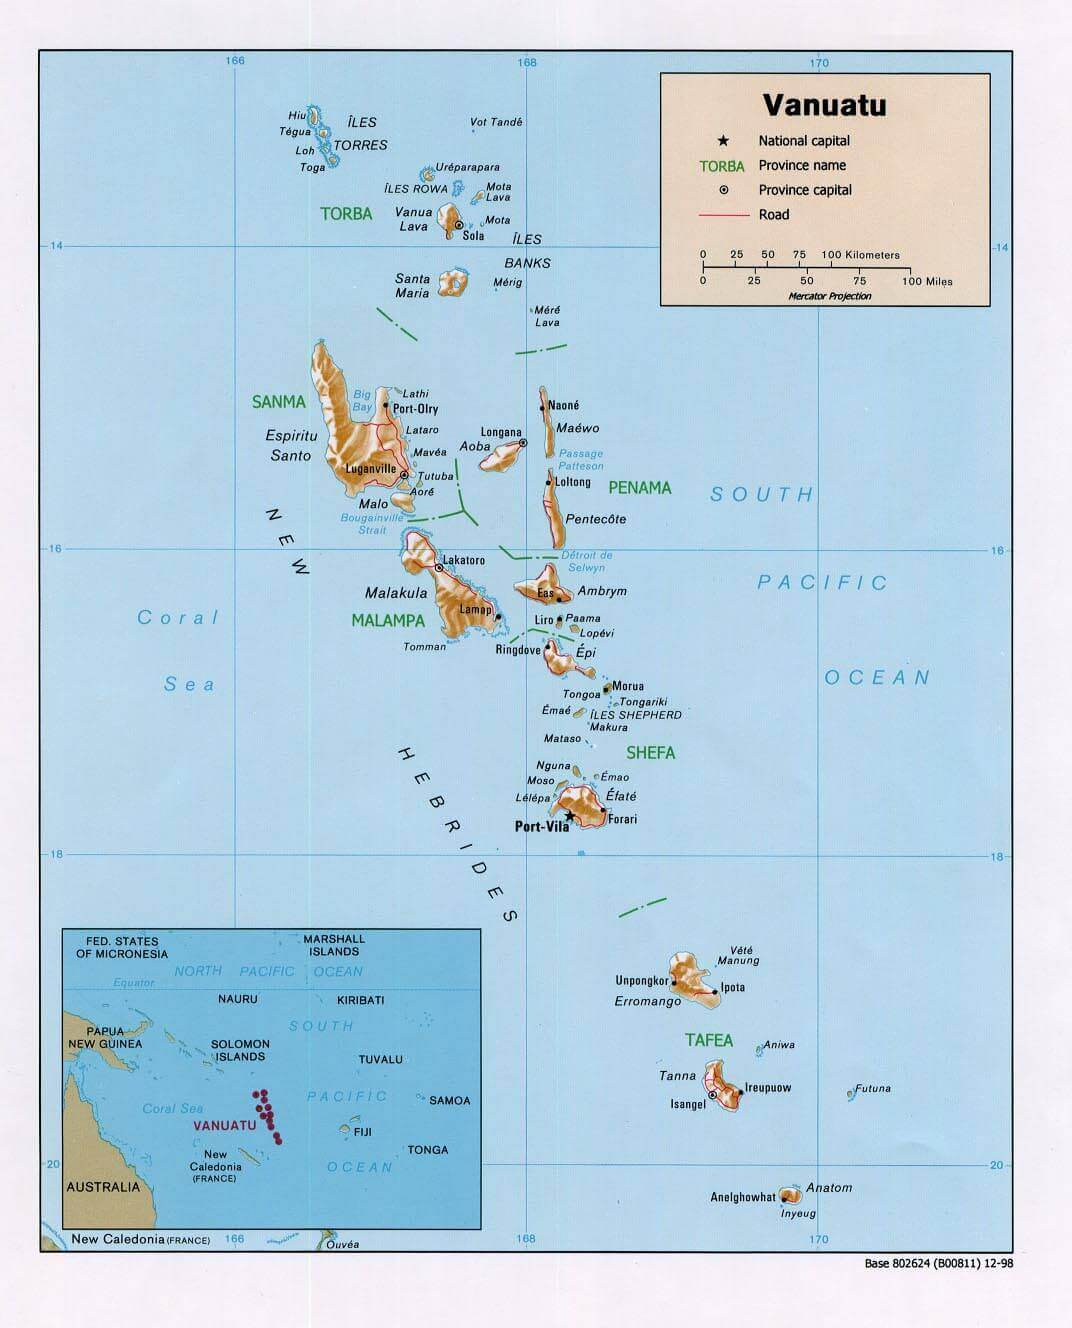 Die Lage Vanuatu